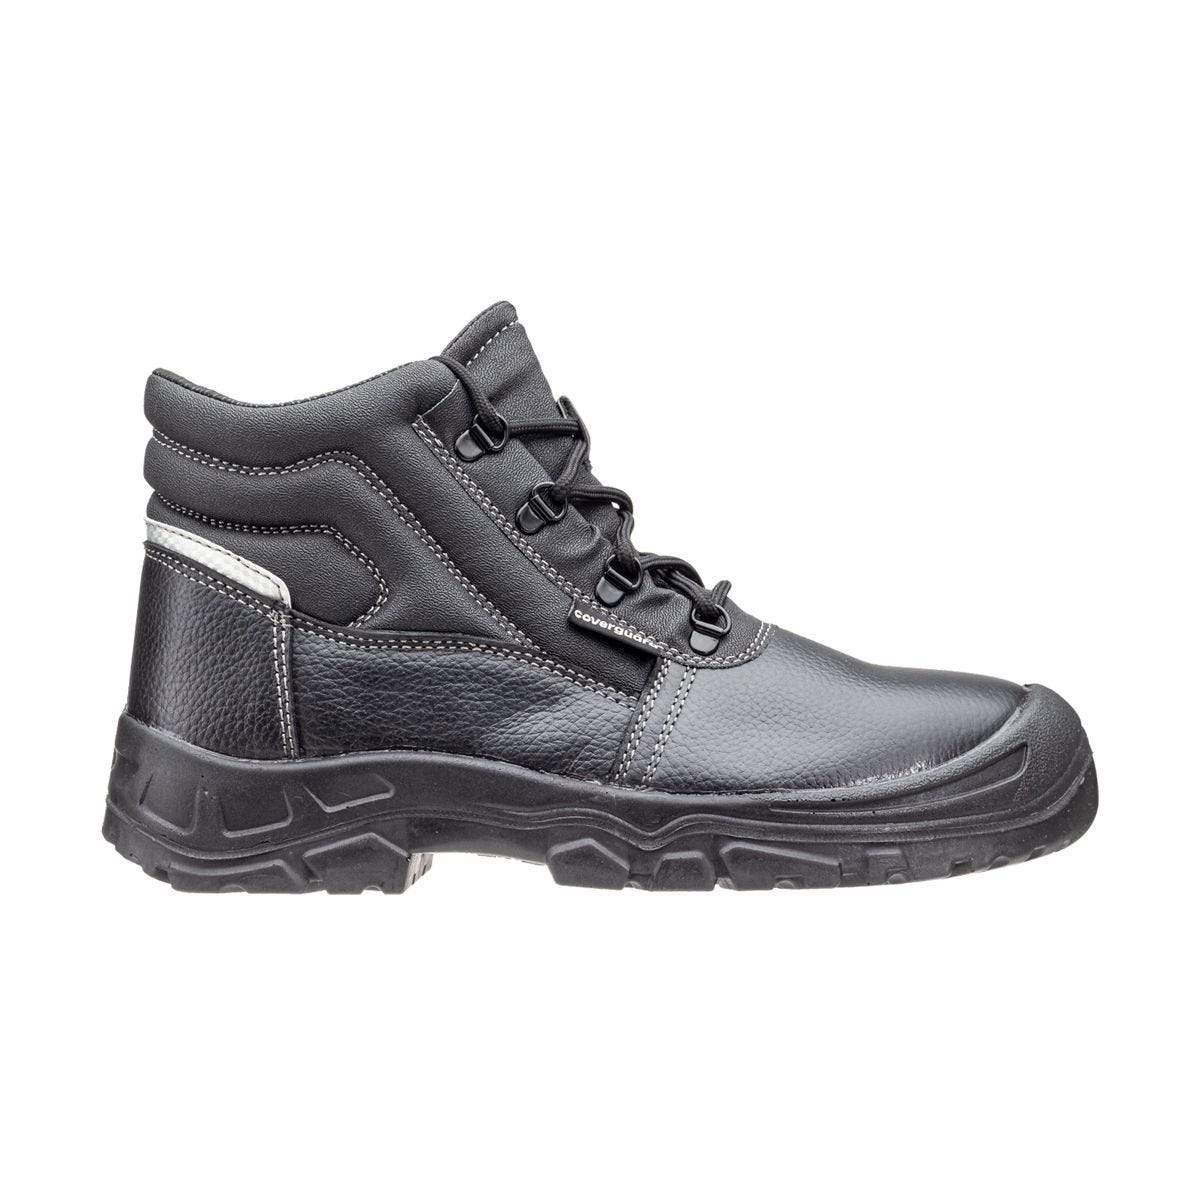 Chaussures de sécurité hautes Azurite II S3 ESD noir - Coverguard - Taille 48 1